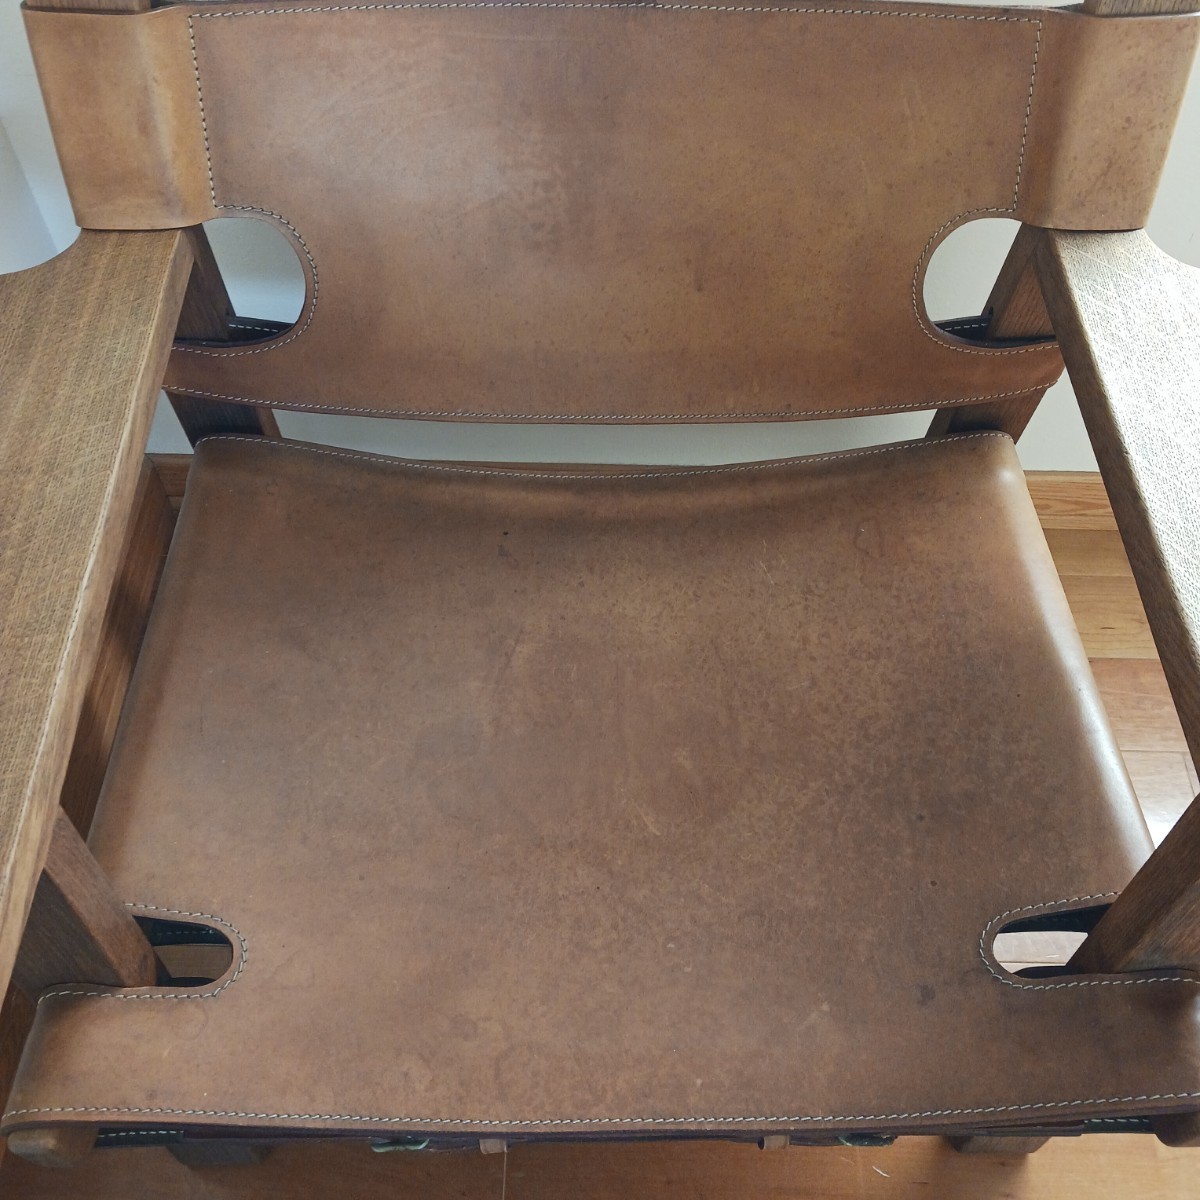 [Model 2226 Spanish Chair]by Borge Mogensen for Fredericia *bo-e*mo-ensen Wegner Fritz Hansen Louis sport sen2